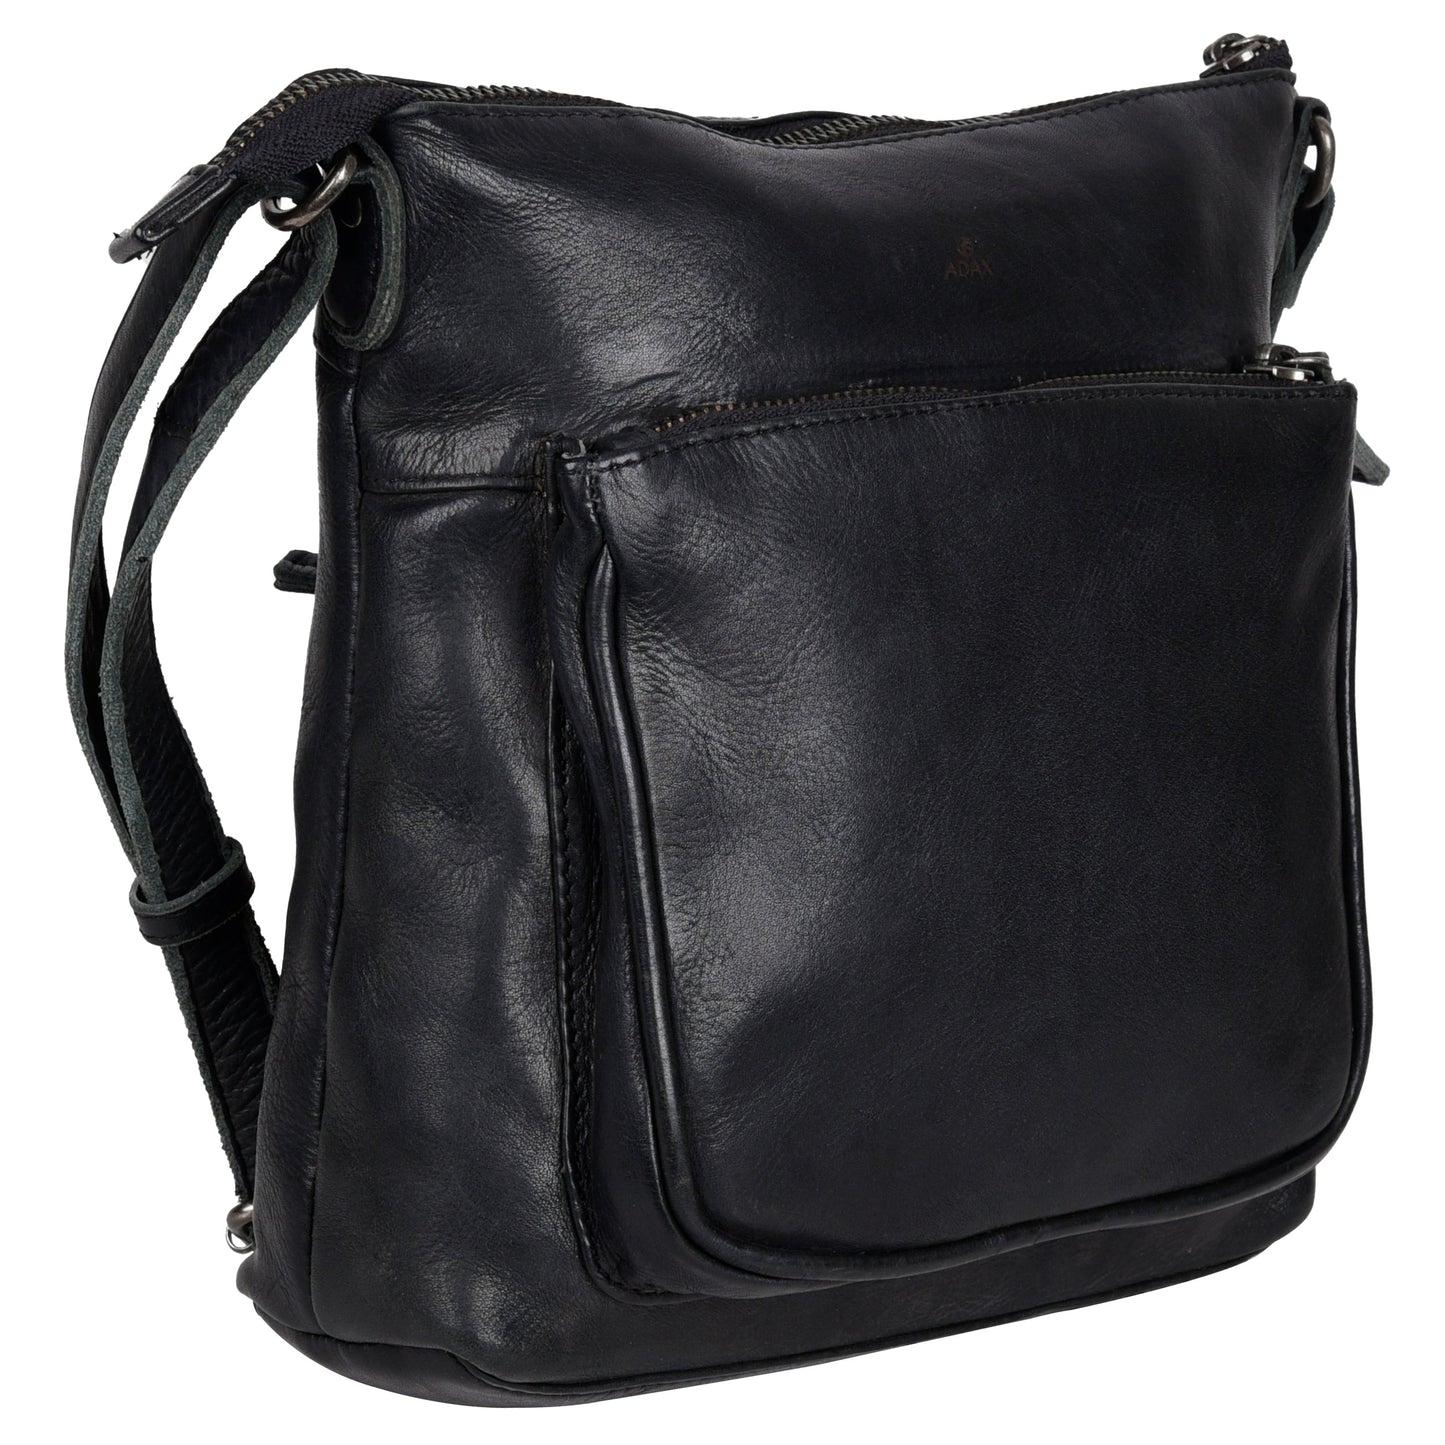 Damenhandtasche 130327 von Adax - Laure Bags and Travel